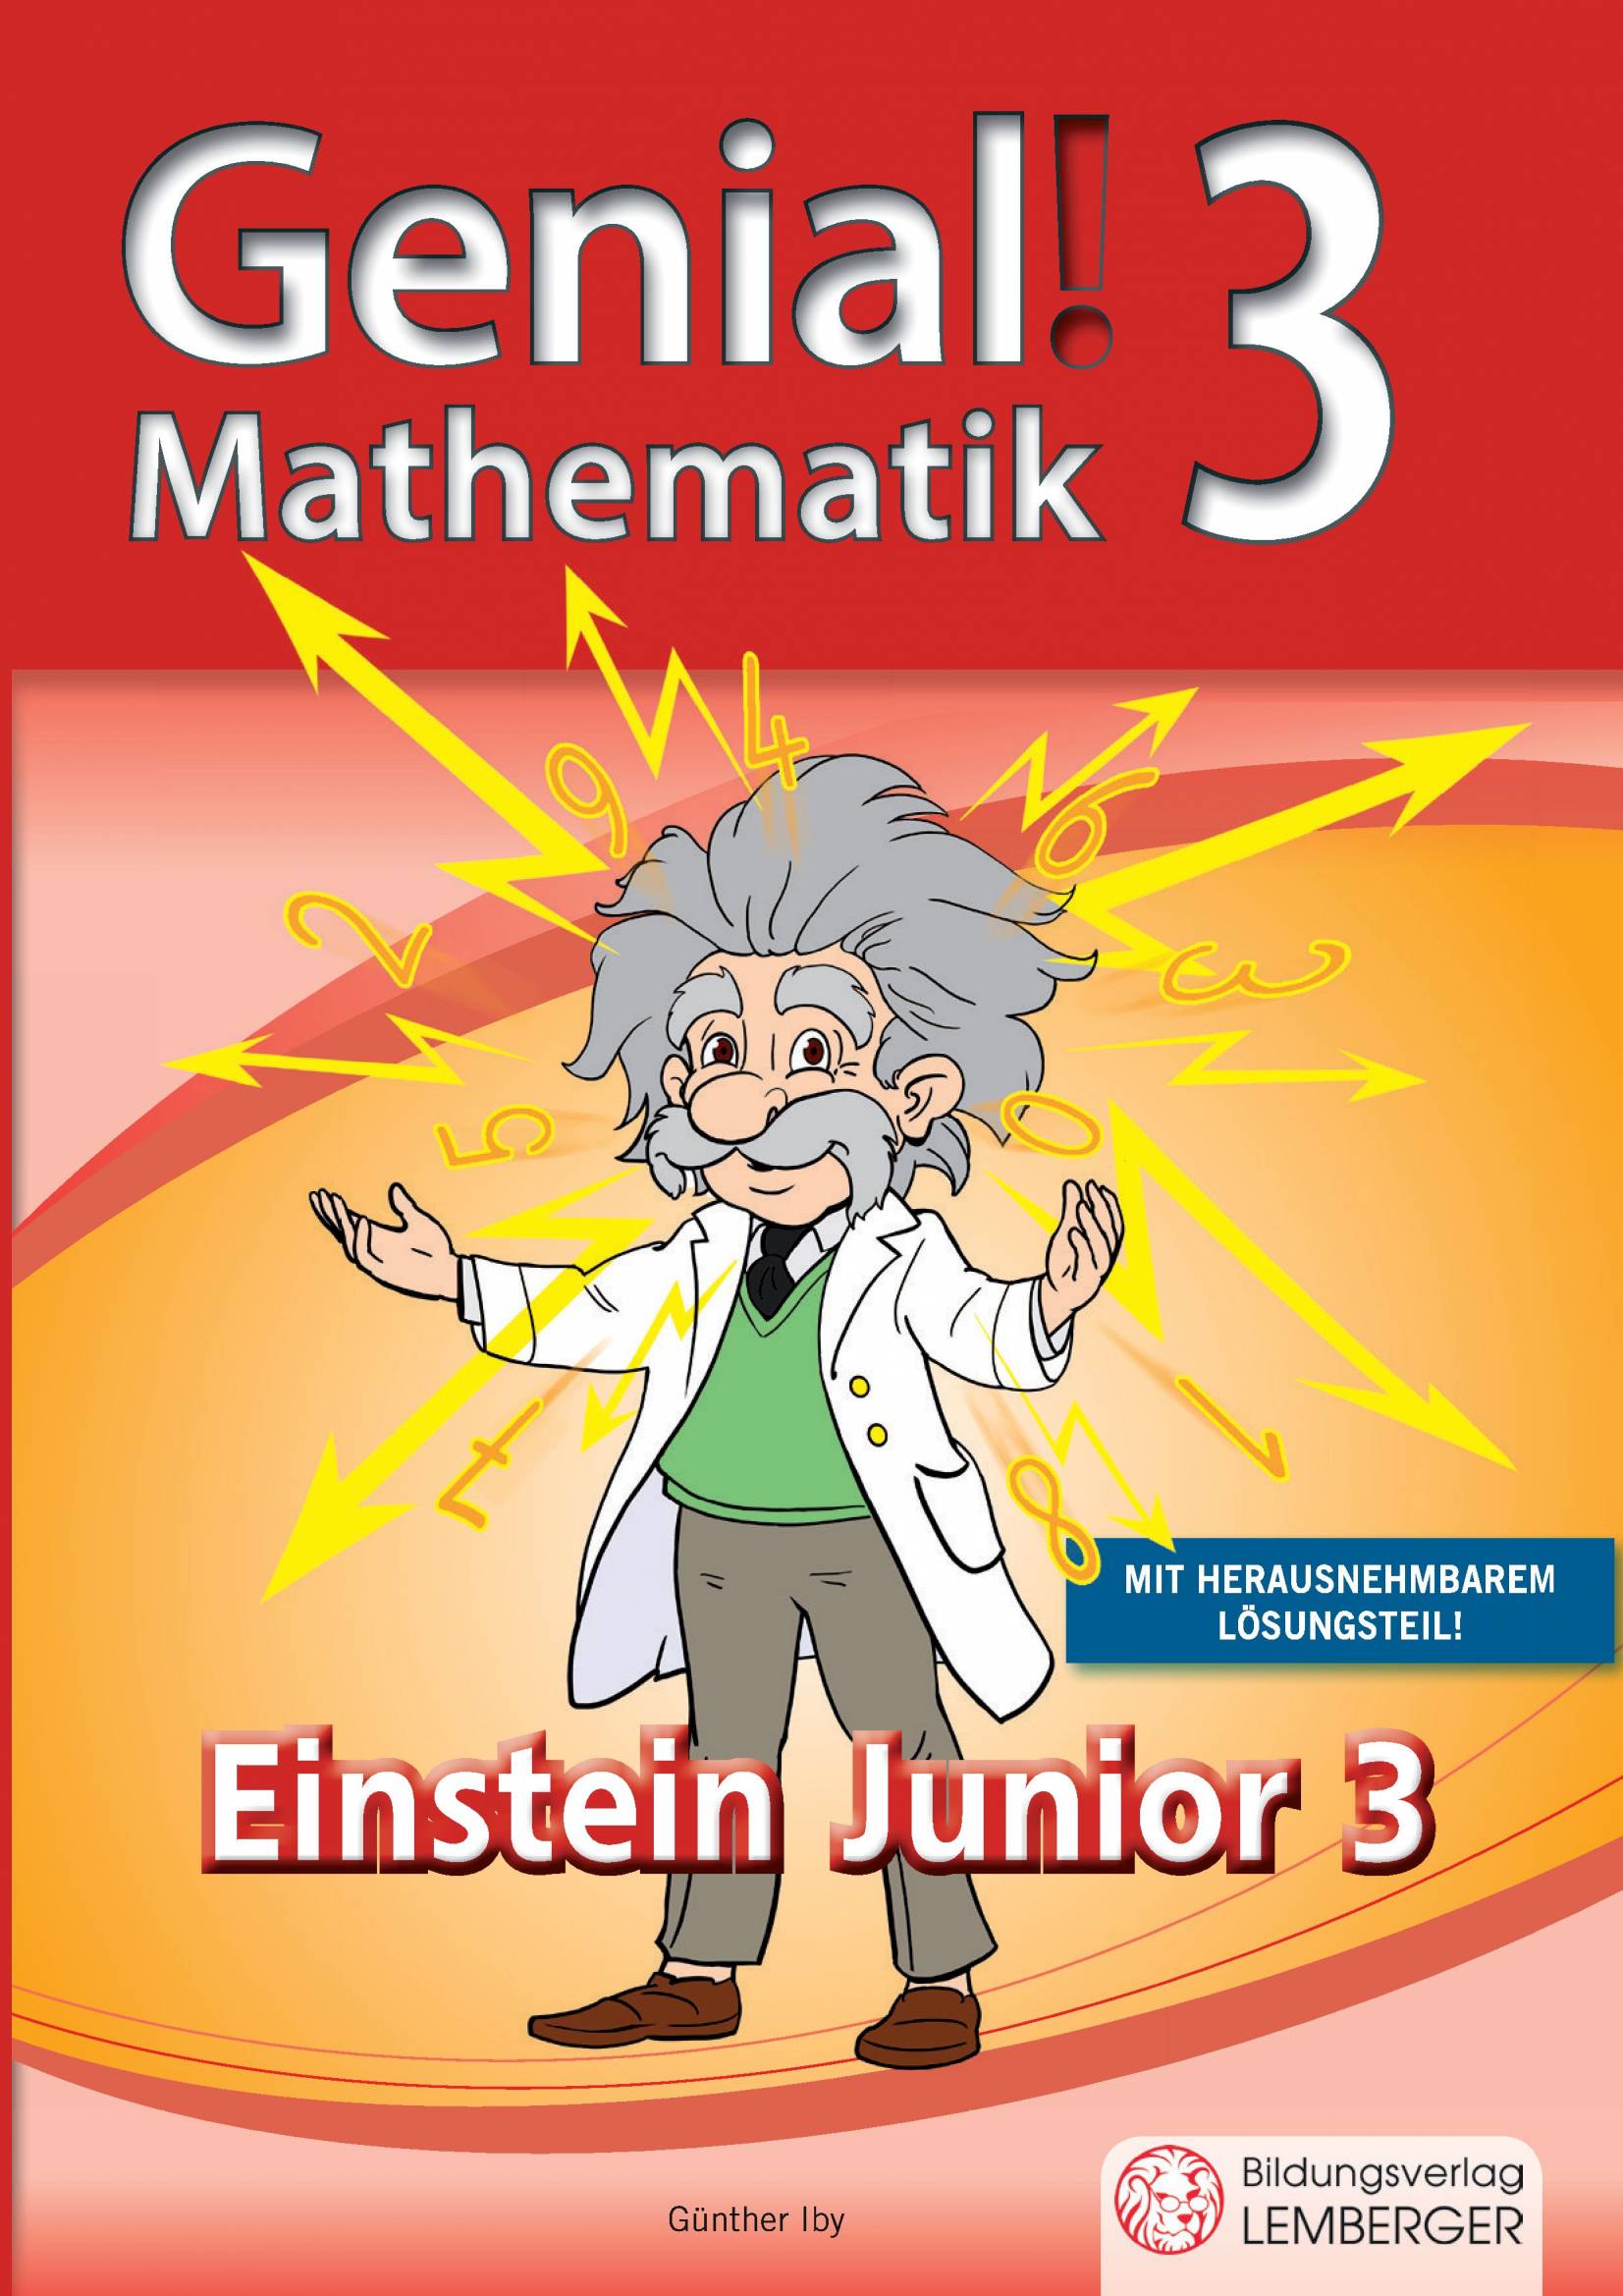 Genial! Mathematik 3 - Einstein Junior